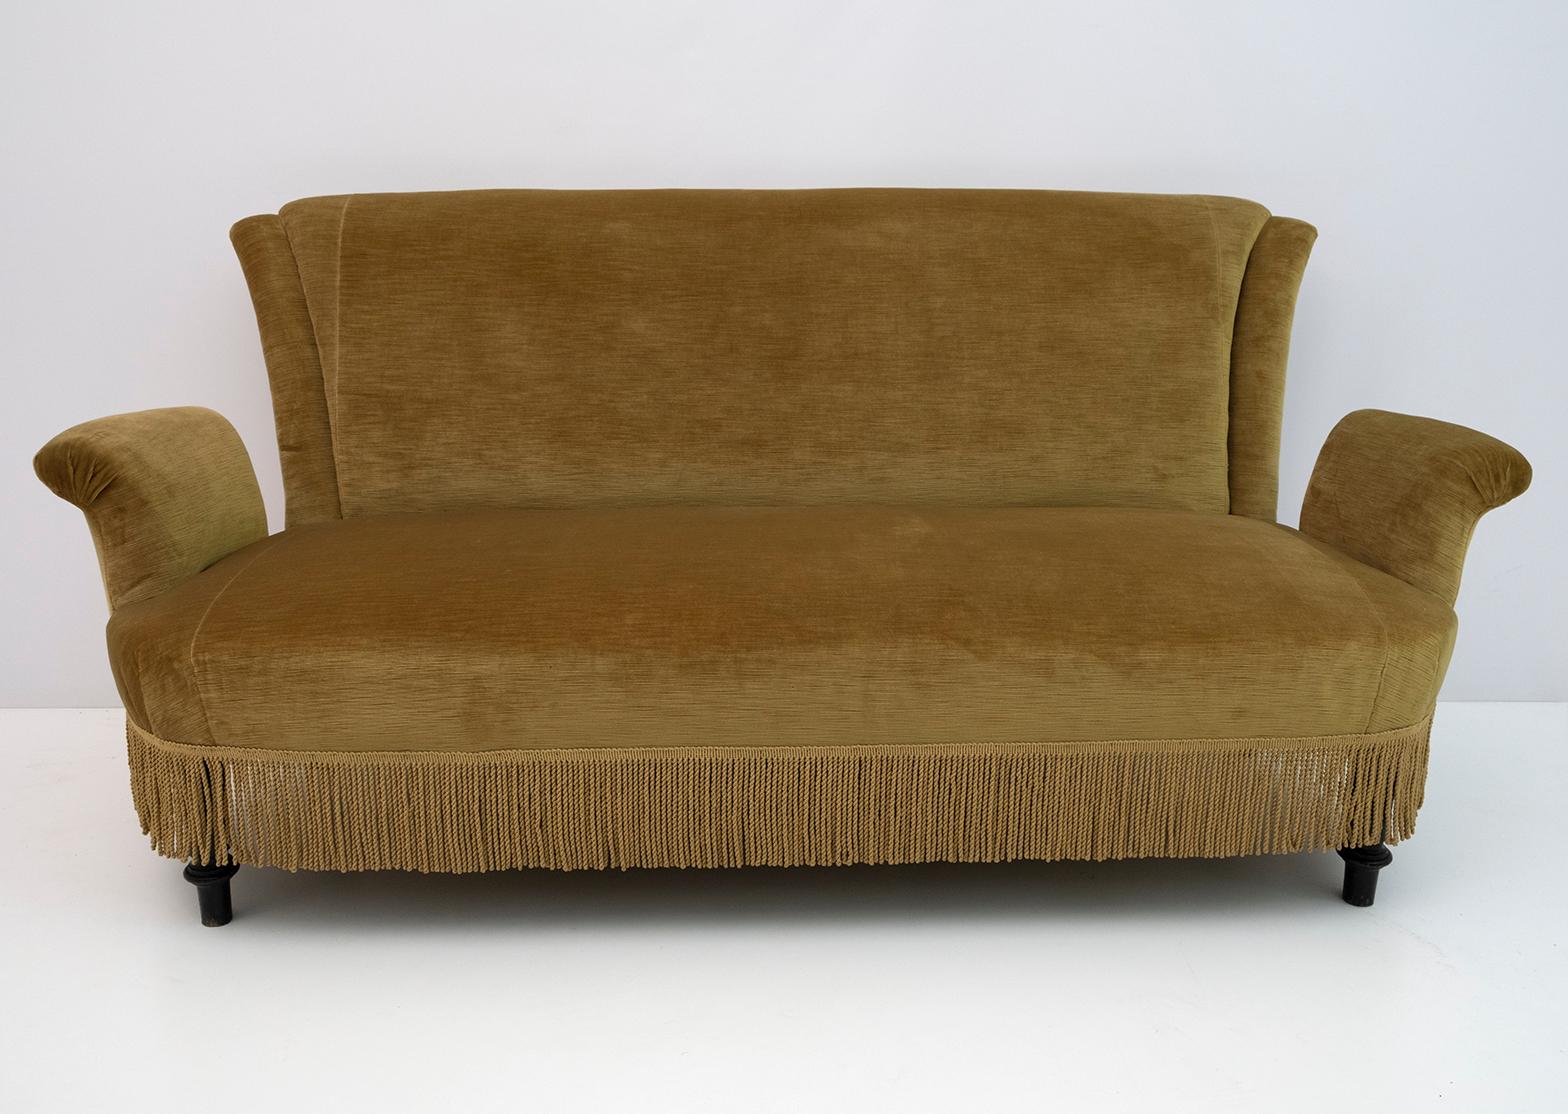 Französisches Sofa aus dem 19. Jahrhundert, Periode Napoleon III., die Polsterung wurde in den 1960er Jahren mit Samt neu bezogen, normale Gebrauchsspuren, aber in sehr gutem Zustand, Frankreich, 1870er Jahre.